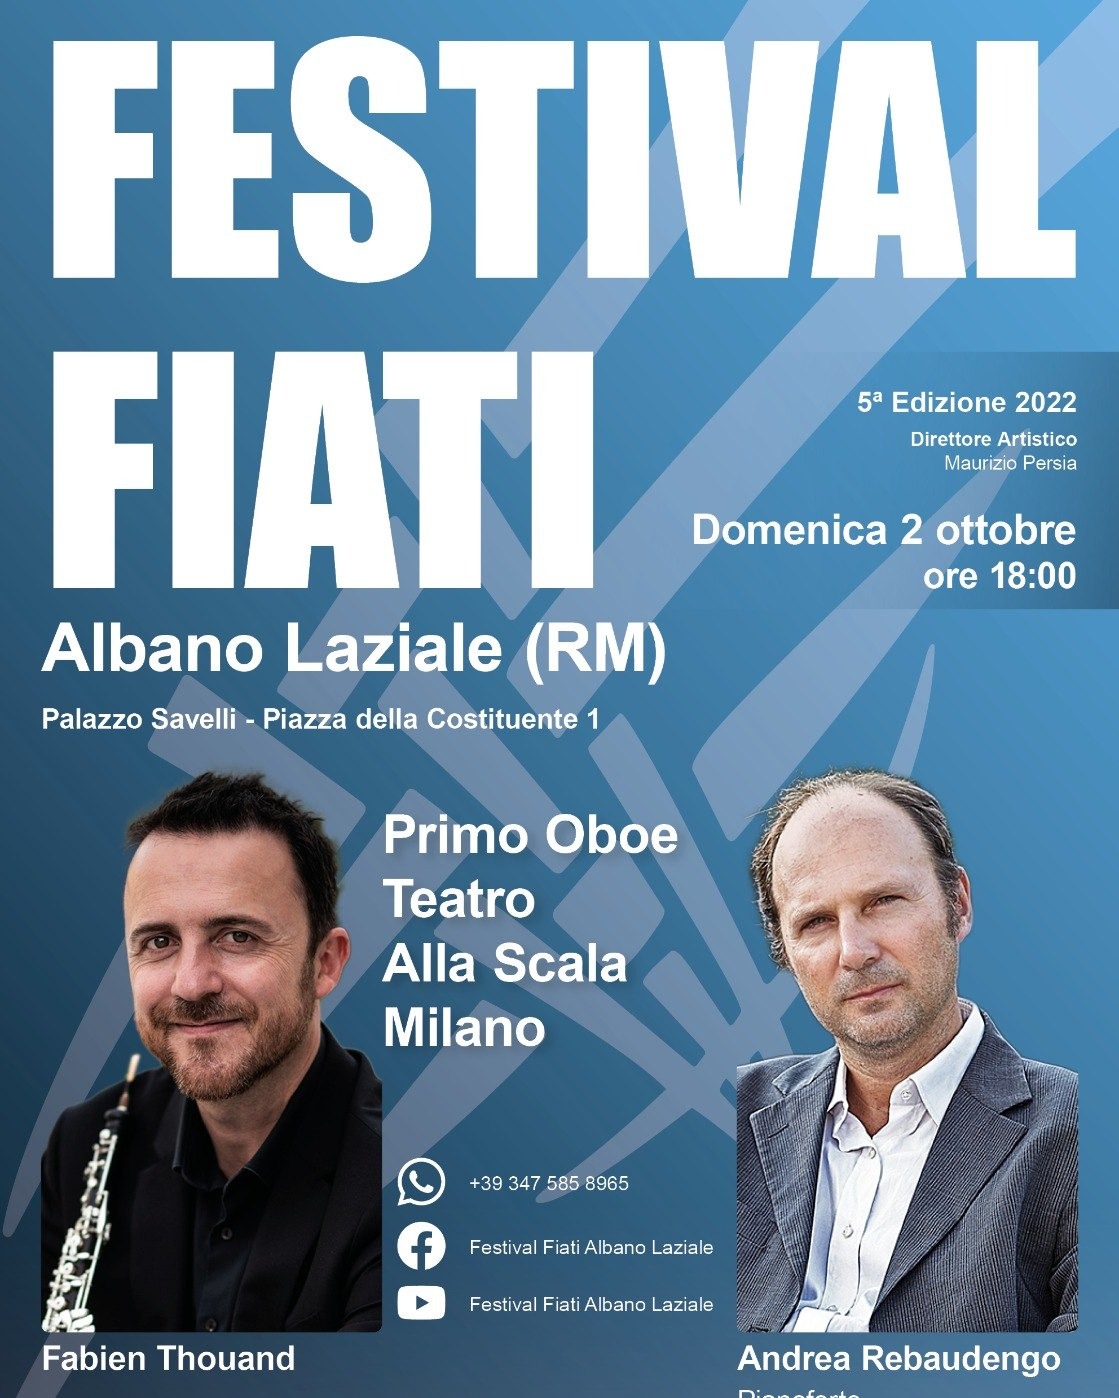 Domenica 2 ottobre al via V edizione Festival Fiati Albano Laziale con Fabien Thouand